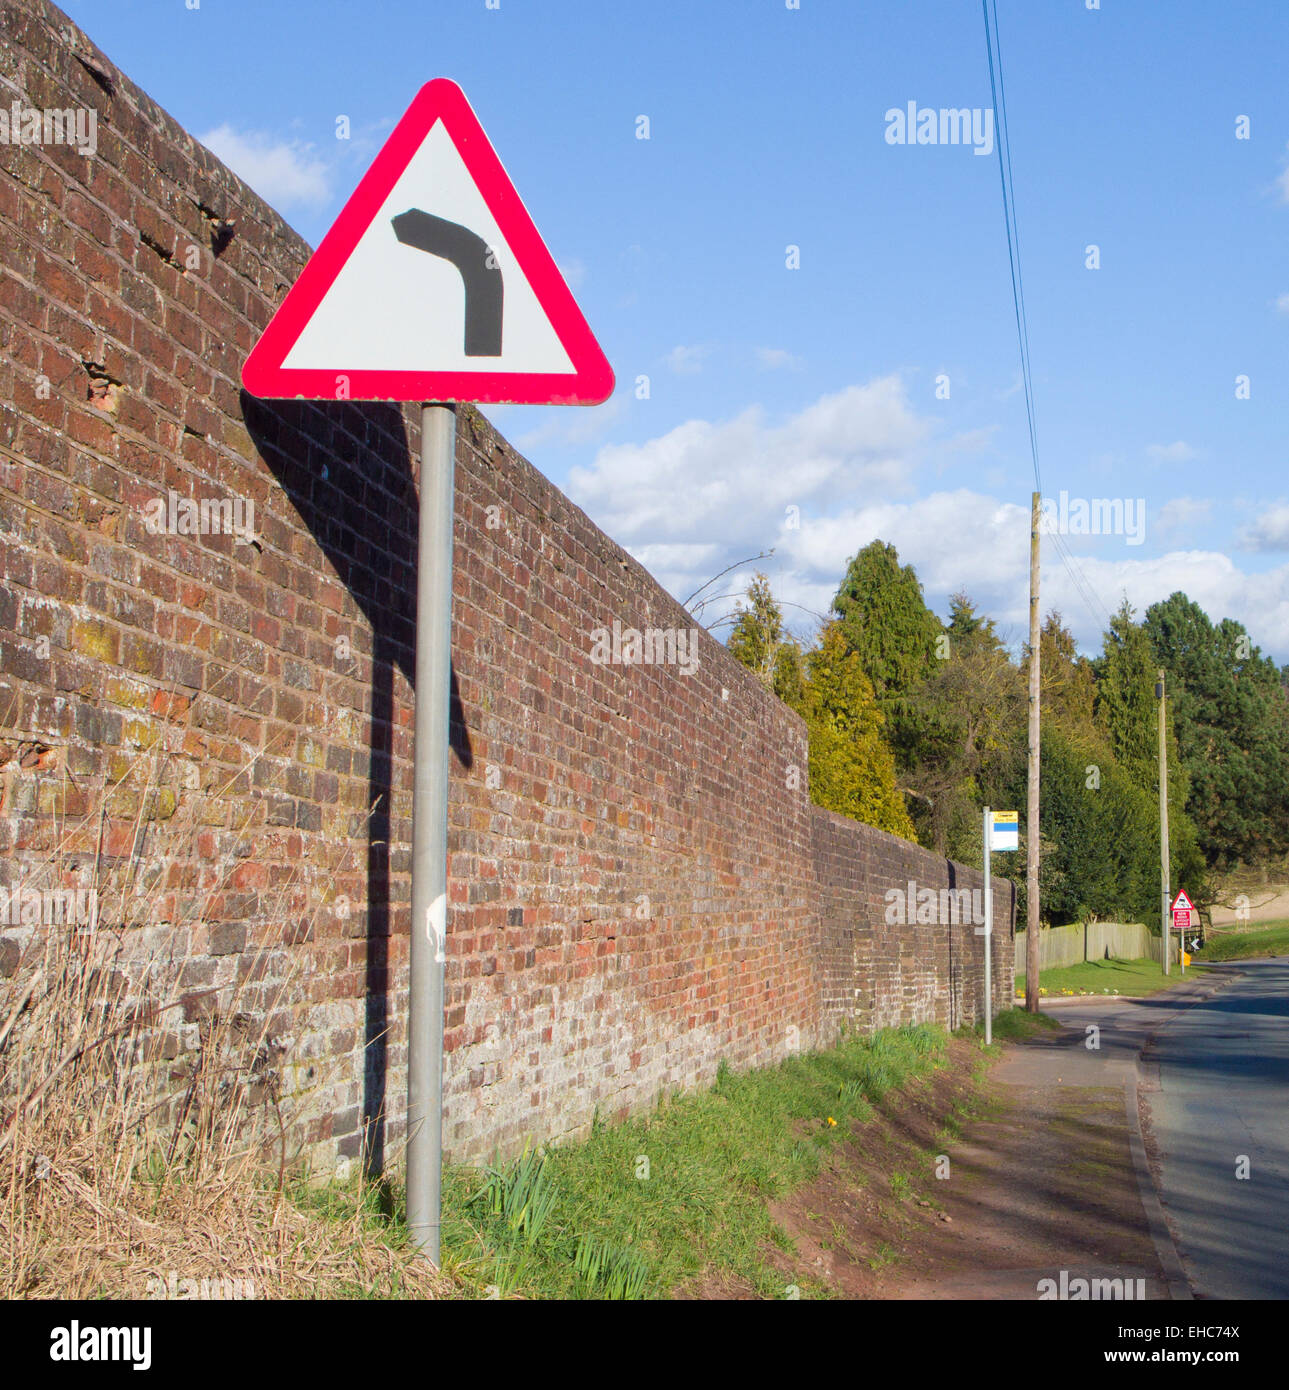 Left Hand Bend Hazard Road Sign, UK Stock Photo